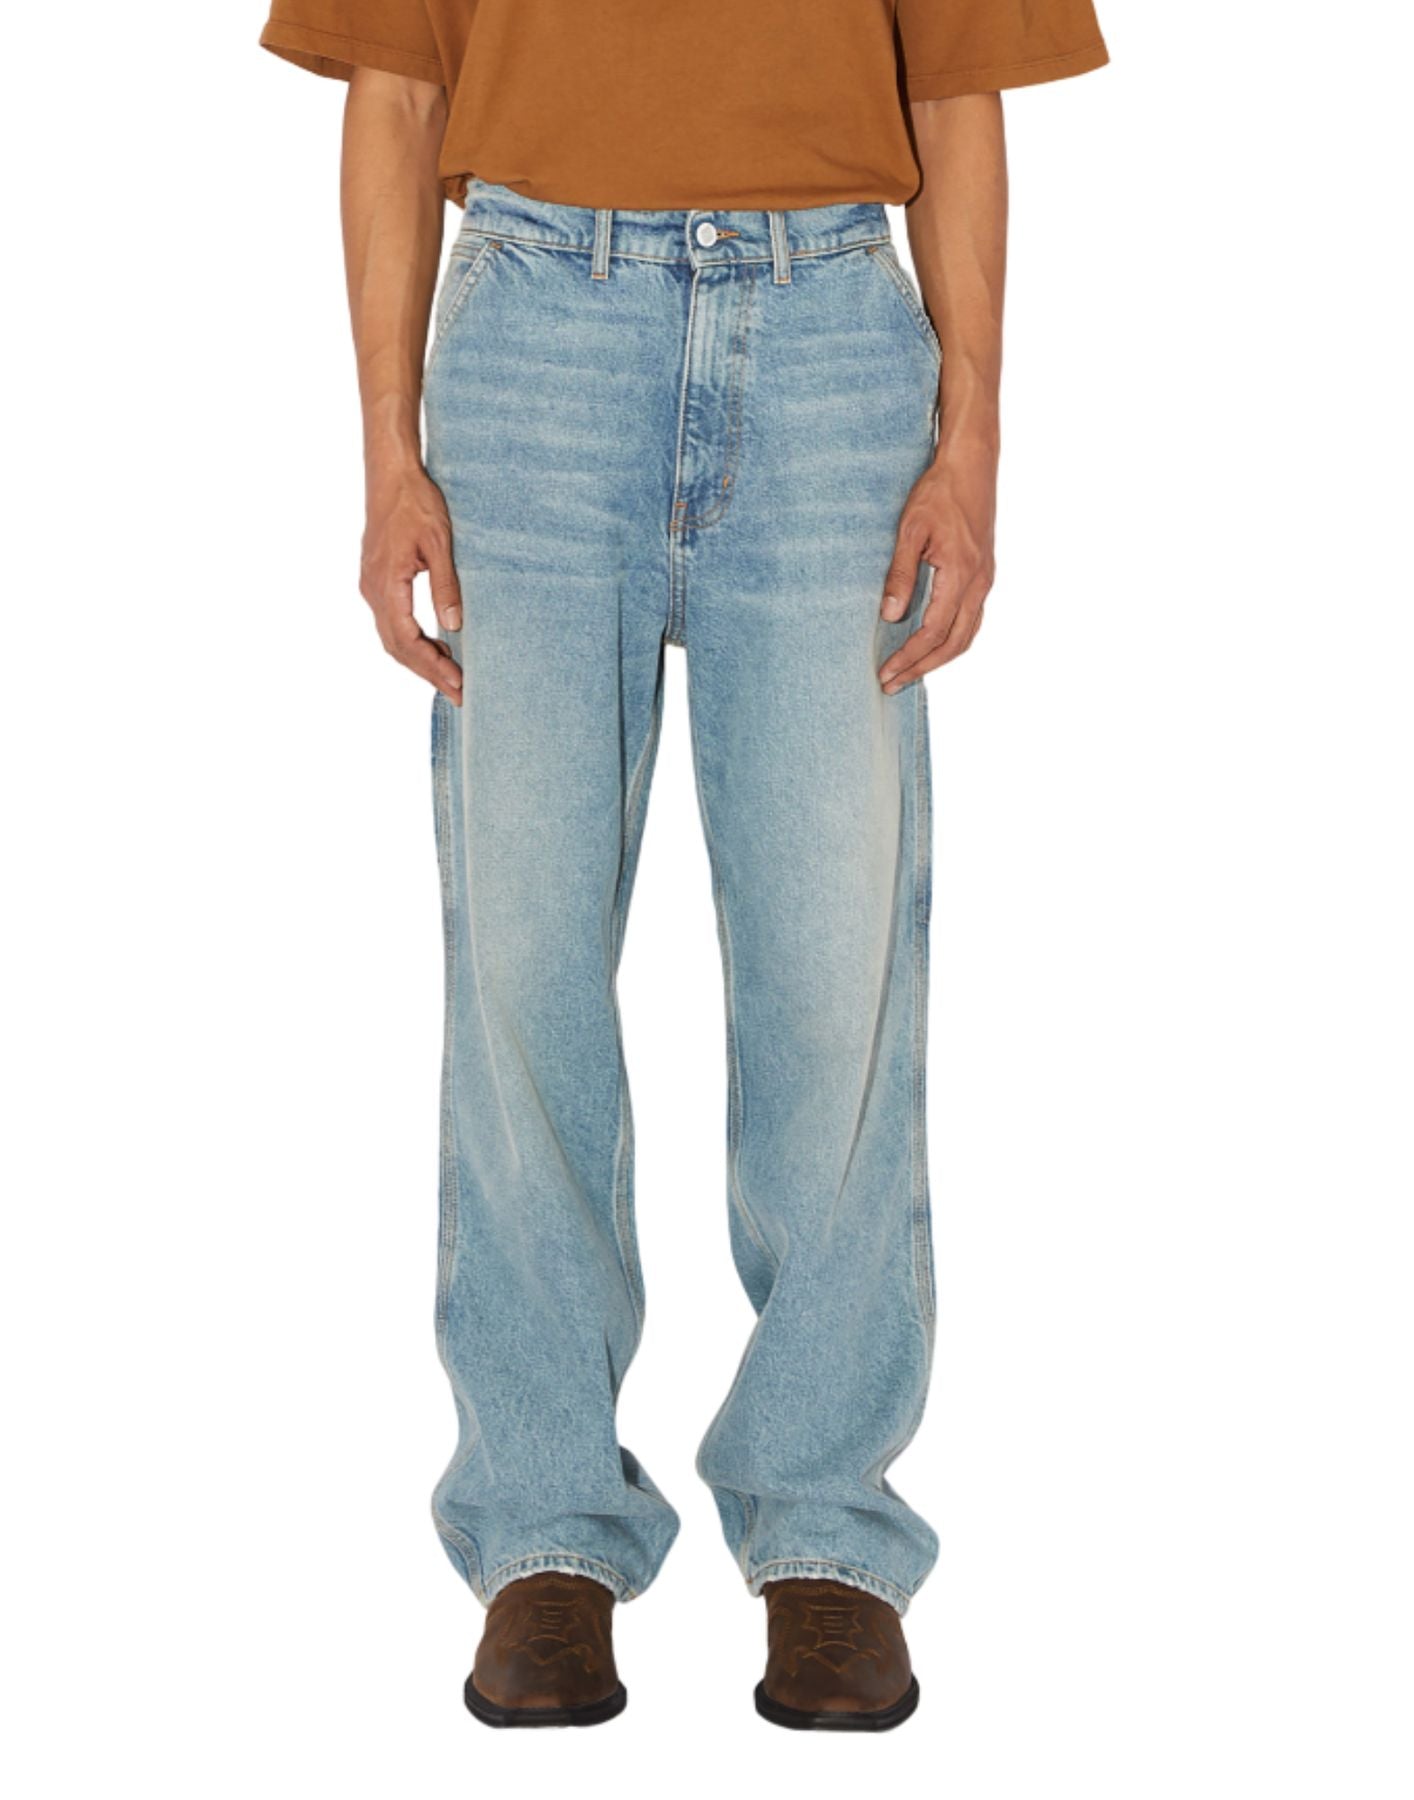 Jeans pour homme amU014d4691772 réel vintage Amish